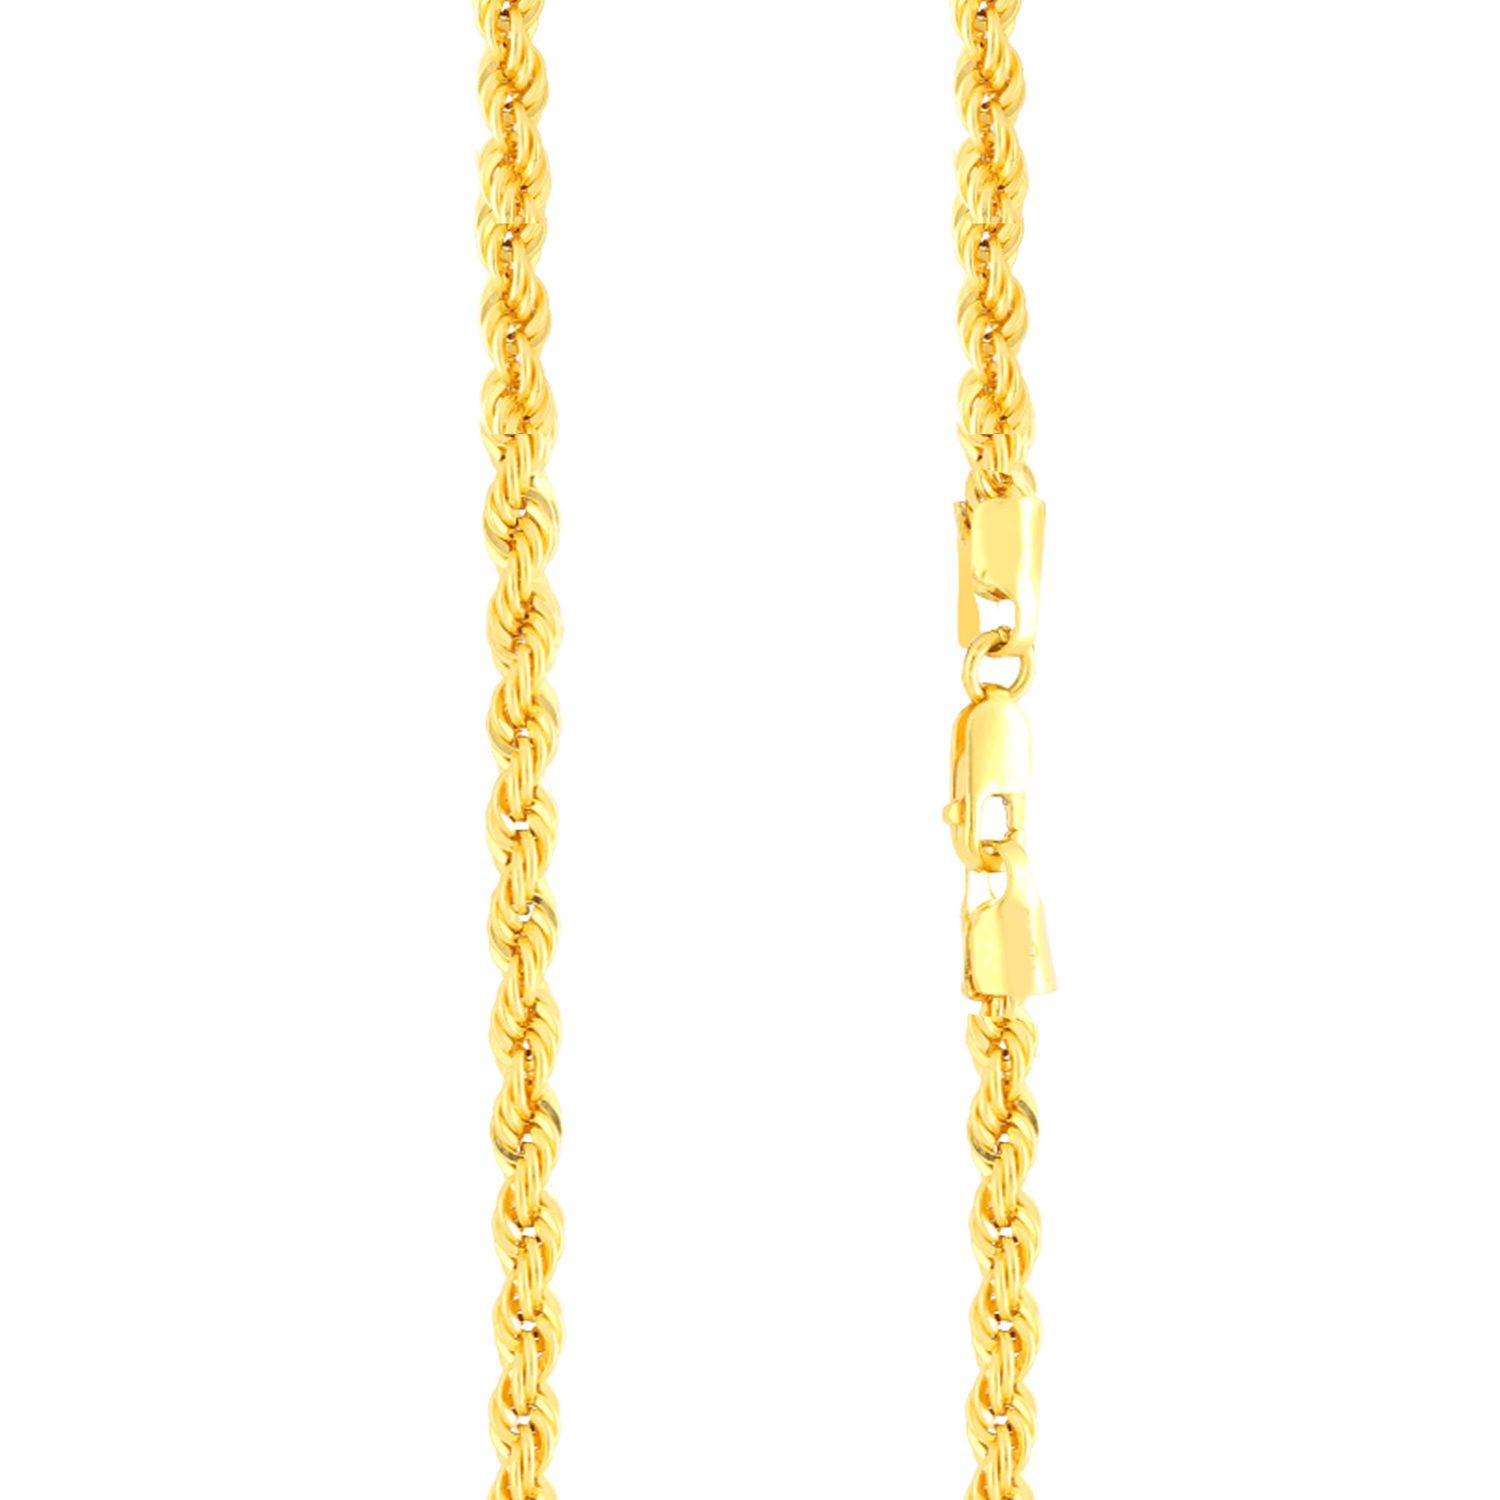 Malabar Gold Chain USAICHHRX60P07